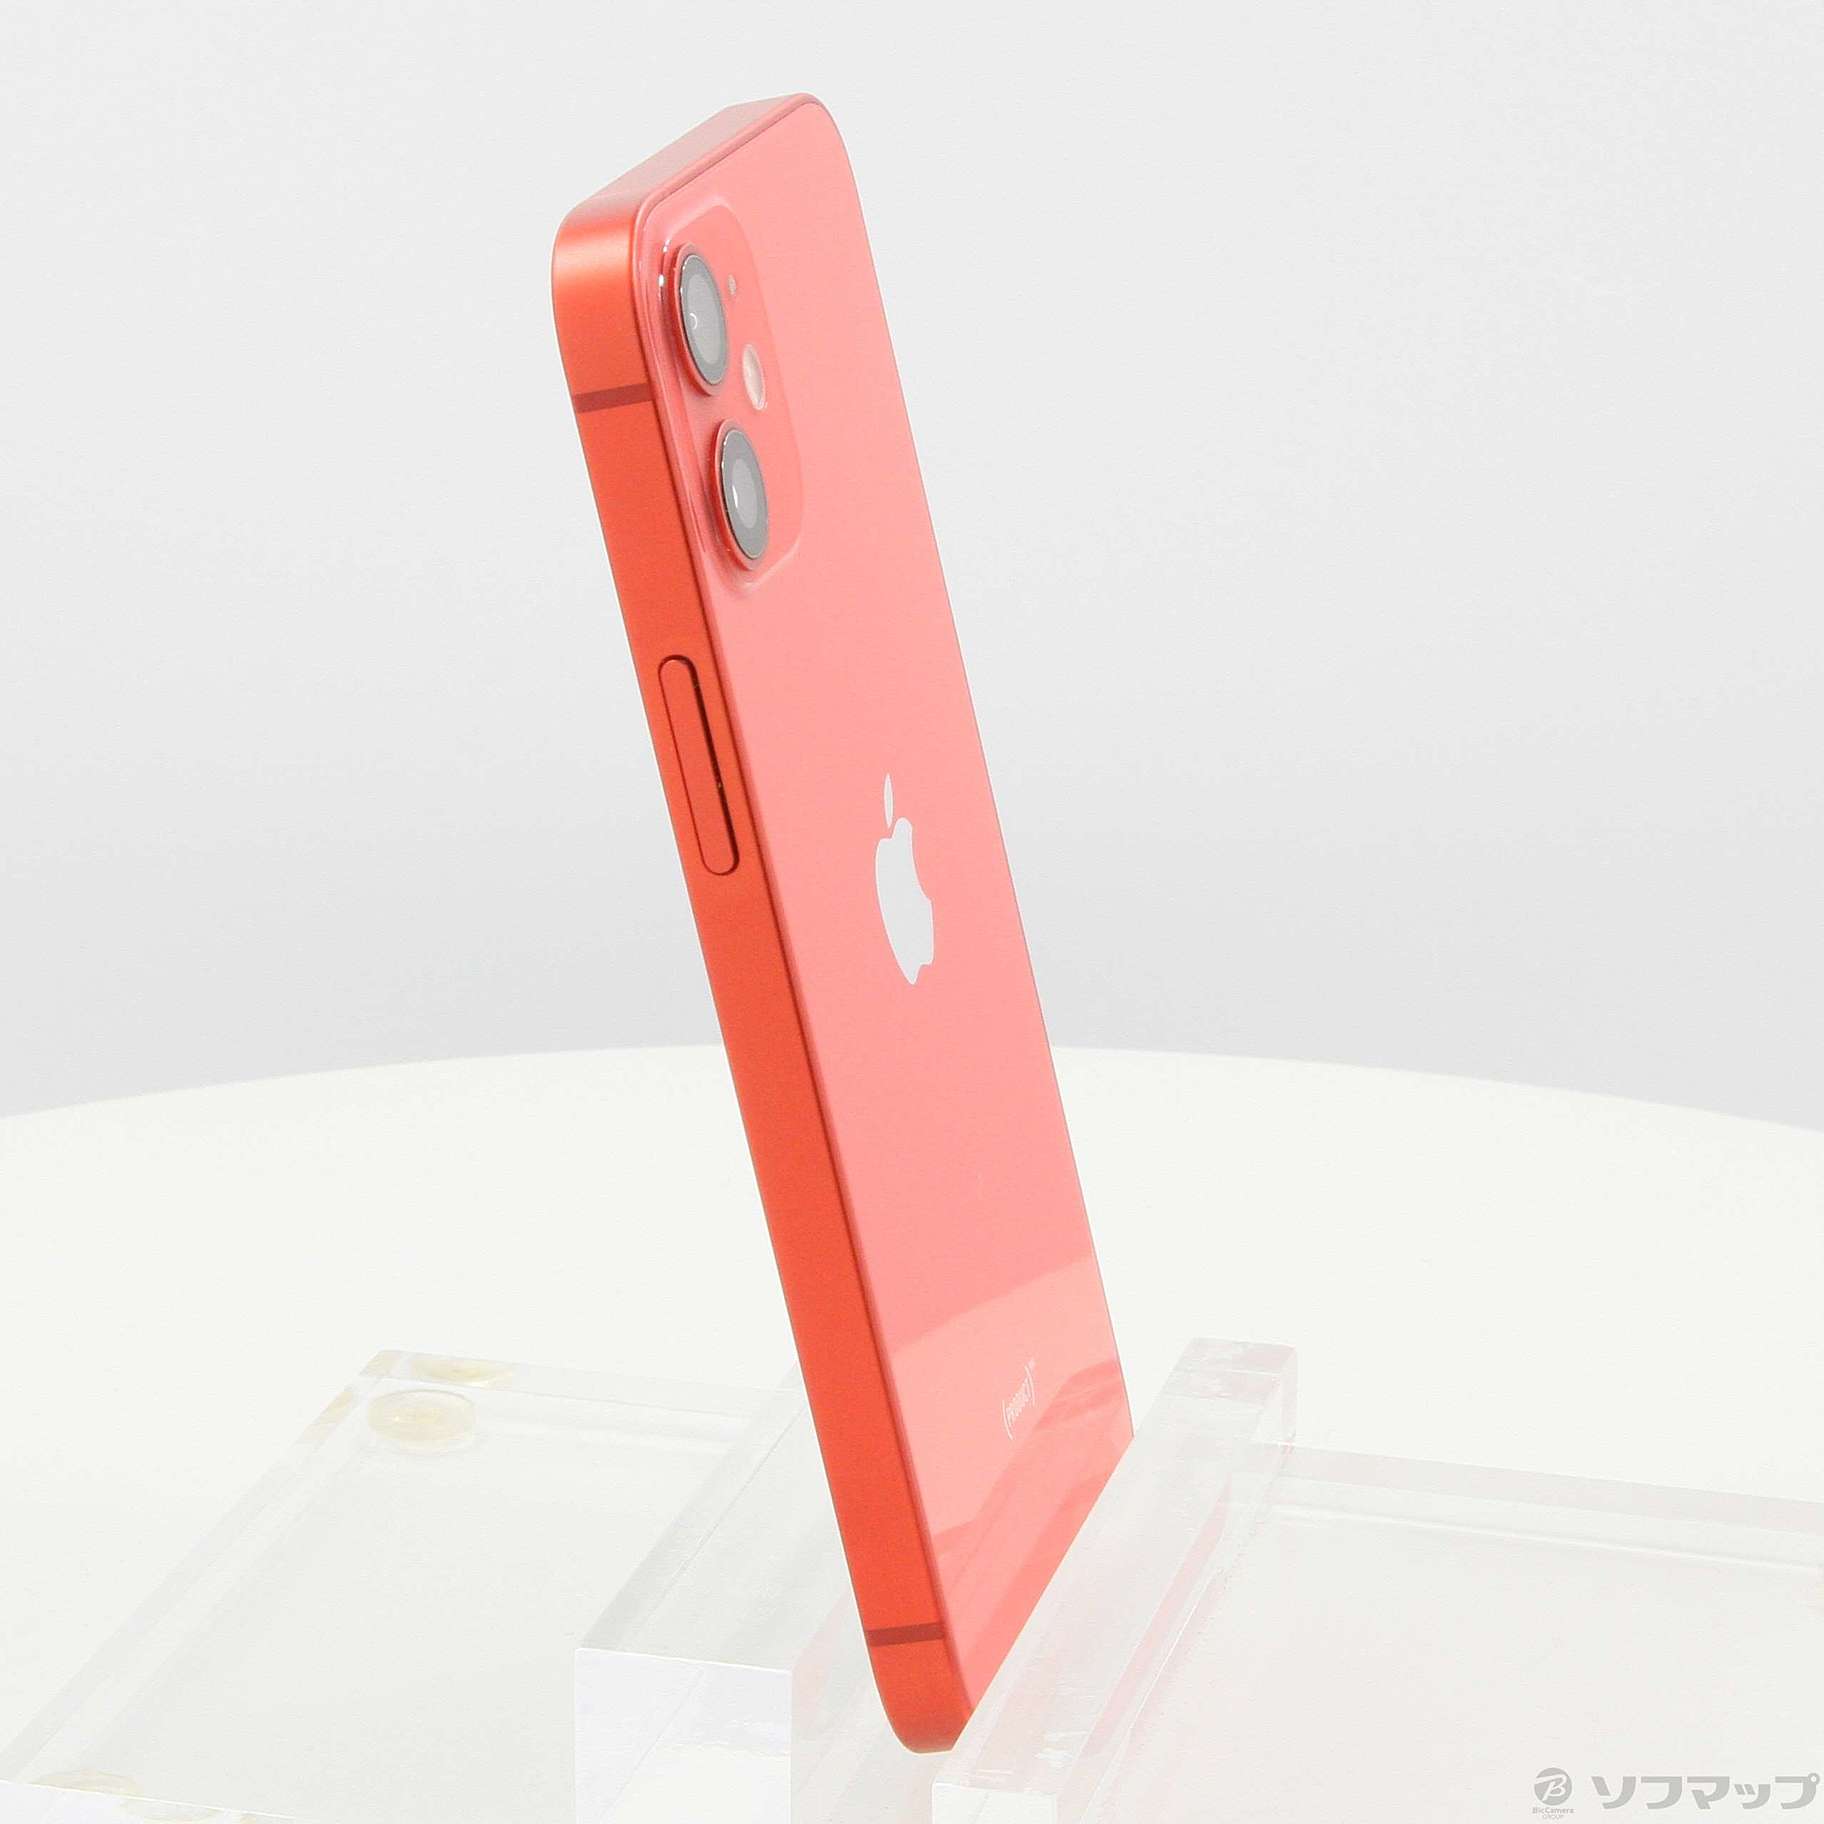 Apple【新品未使用】iPhone 12 mini 64GB レッド - スマートフォン本体